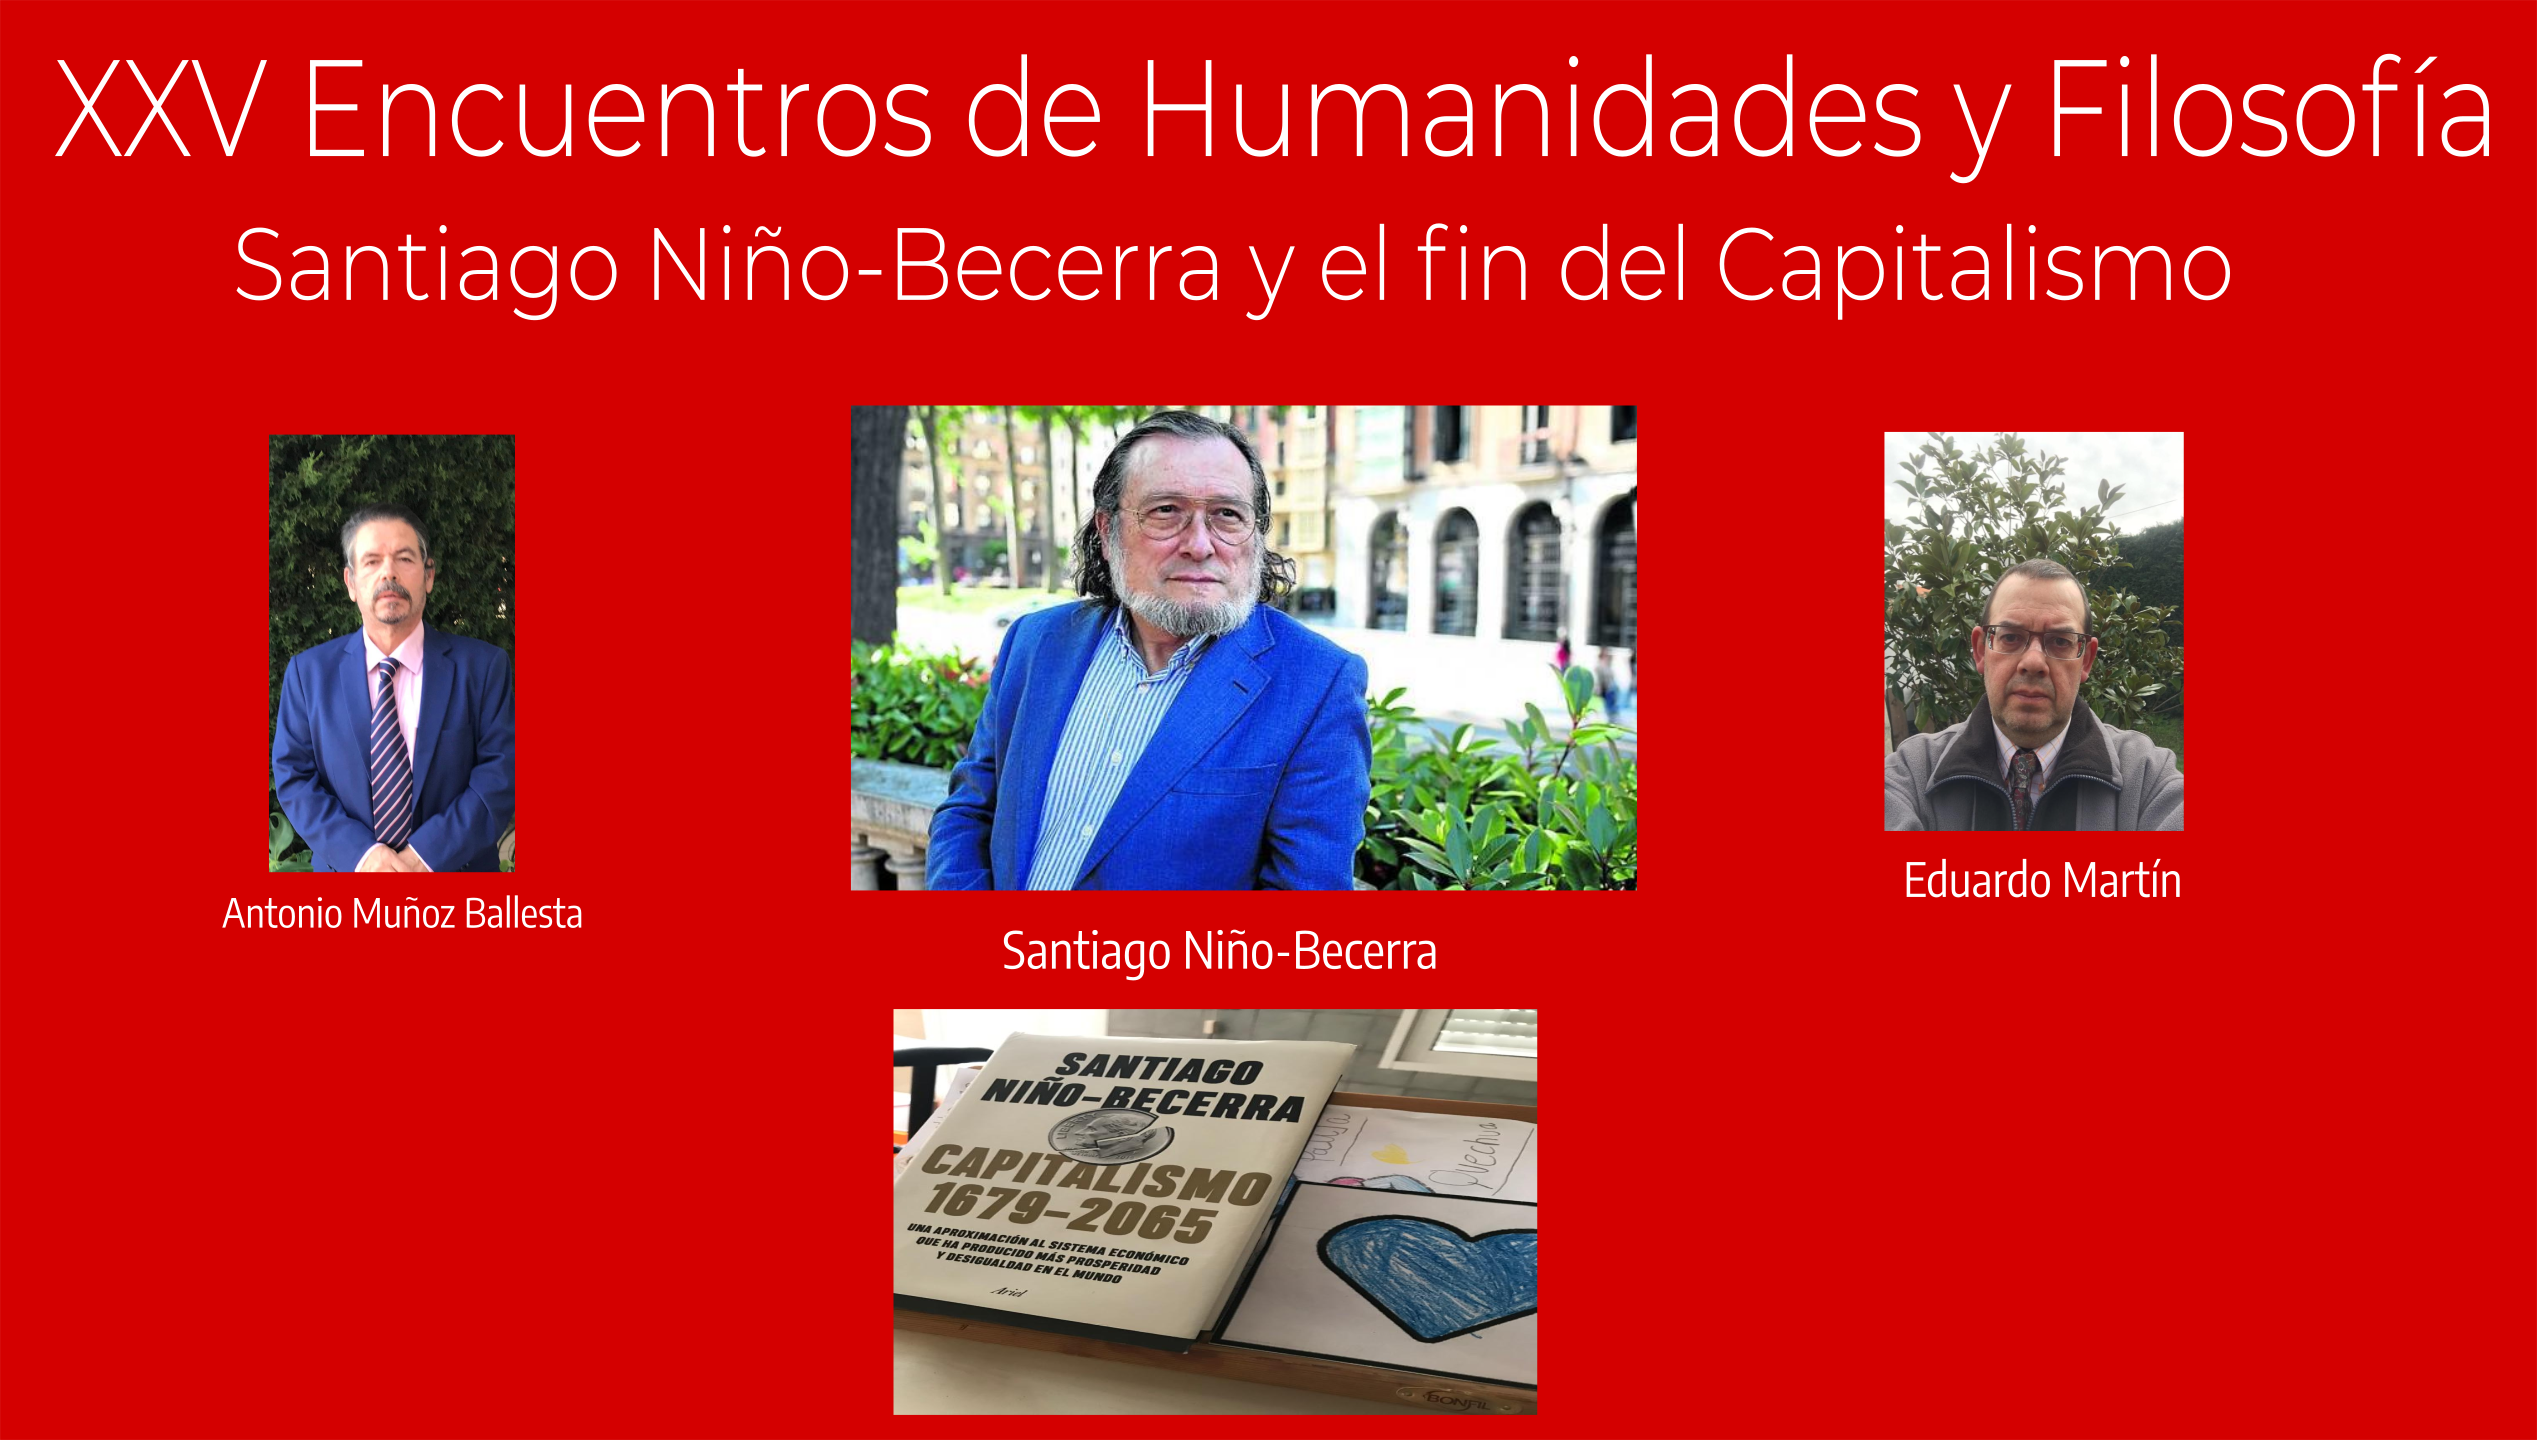 XXV Encuentros de Humanidades y Filosfofía, Santiago Niño-Becerra y el fin del Capitalismo (y del comunismo) 